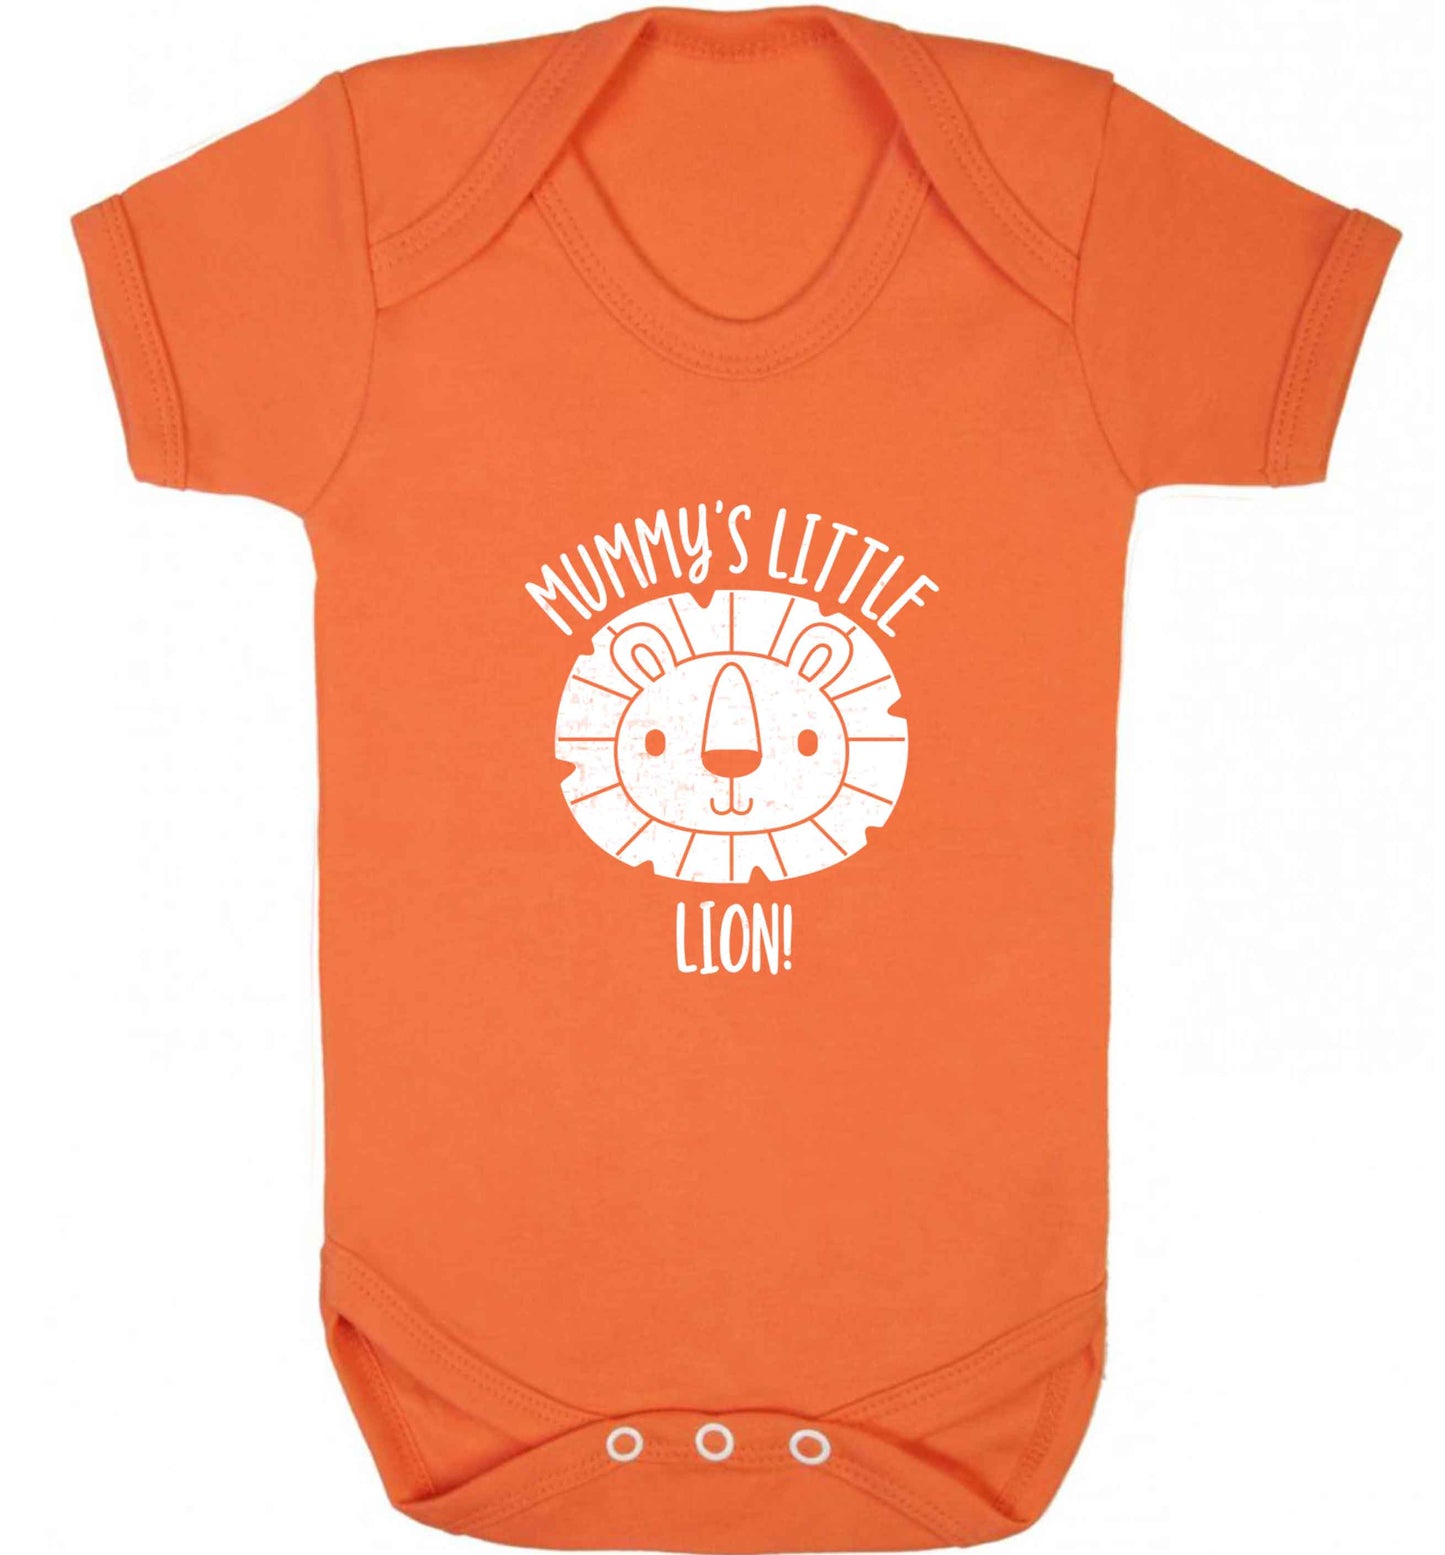 Mummy's little lion baby vest orange 18-24 months